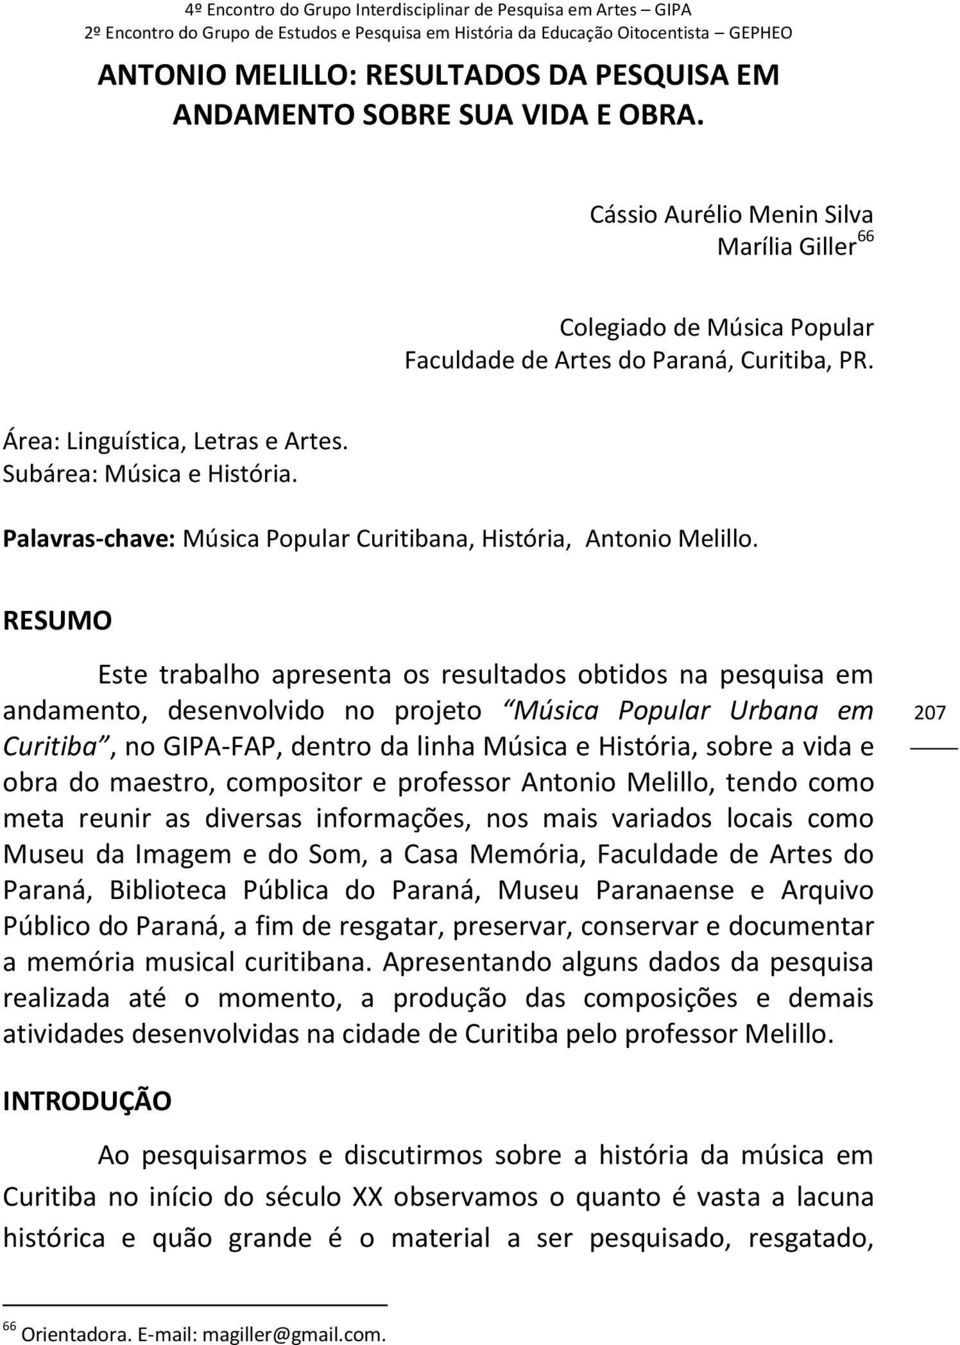 RESUMO Este trabalho apresenta os resultados obtidos na pesquisa em andamento, desenvolvido no projeto Música Popular Urbana em Curitiba, no GIPA-FAP, dentro da linha Música e História, sobre a vida